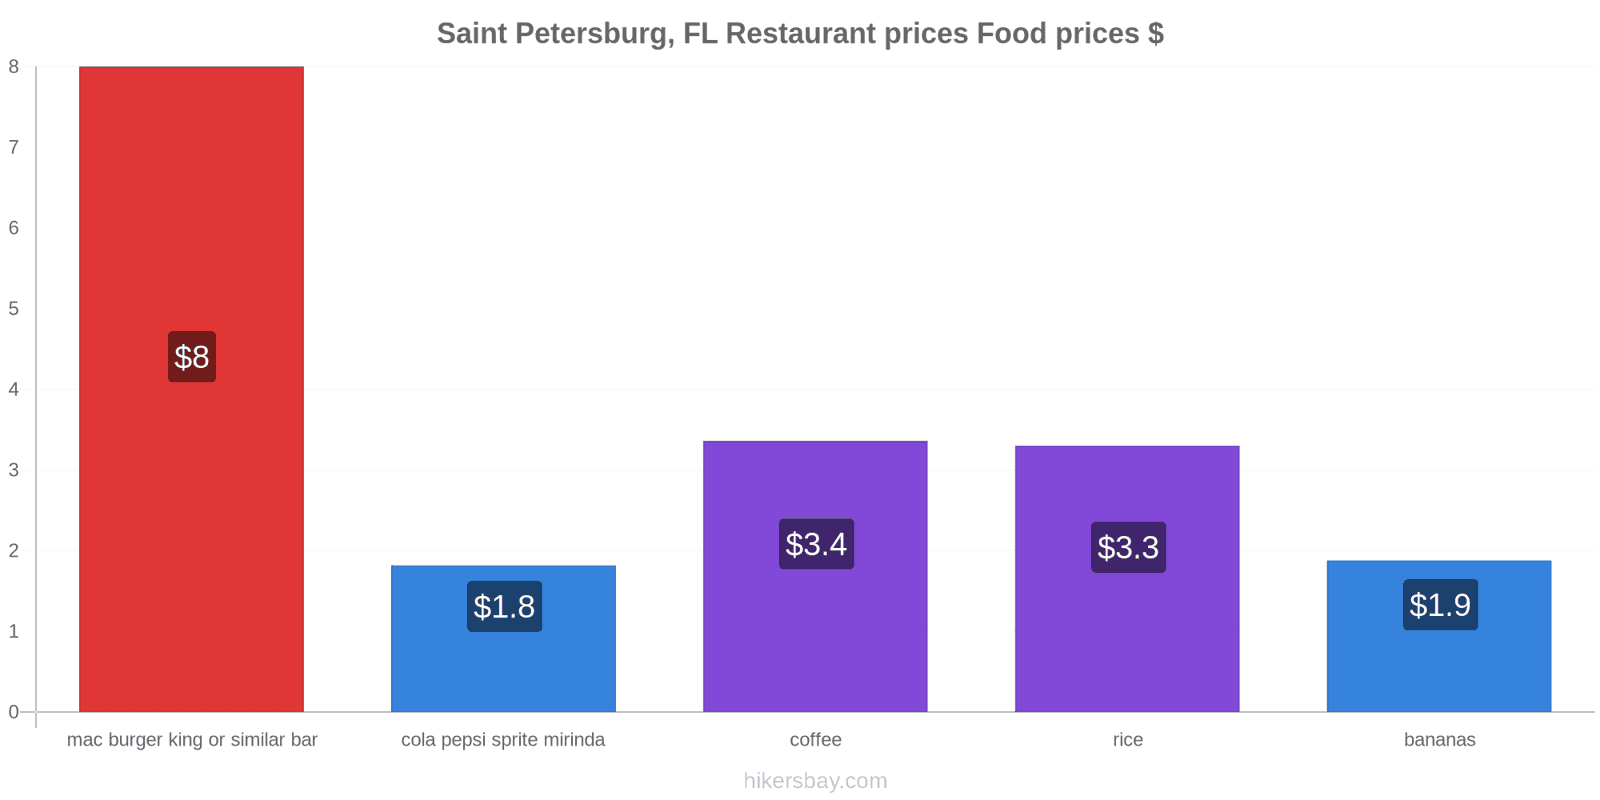 Saint Petersburg, FL price changes hikersbay.com